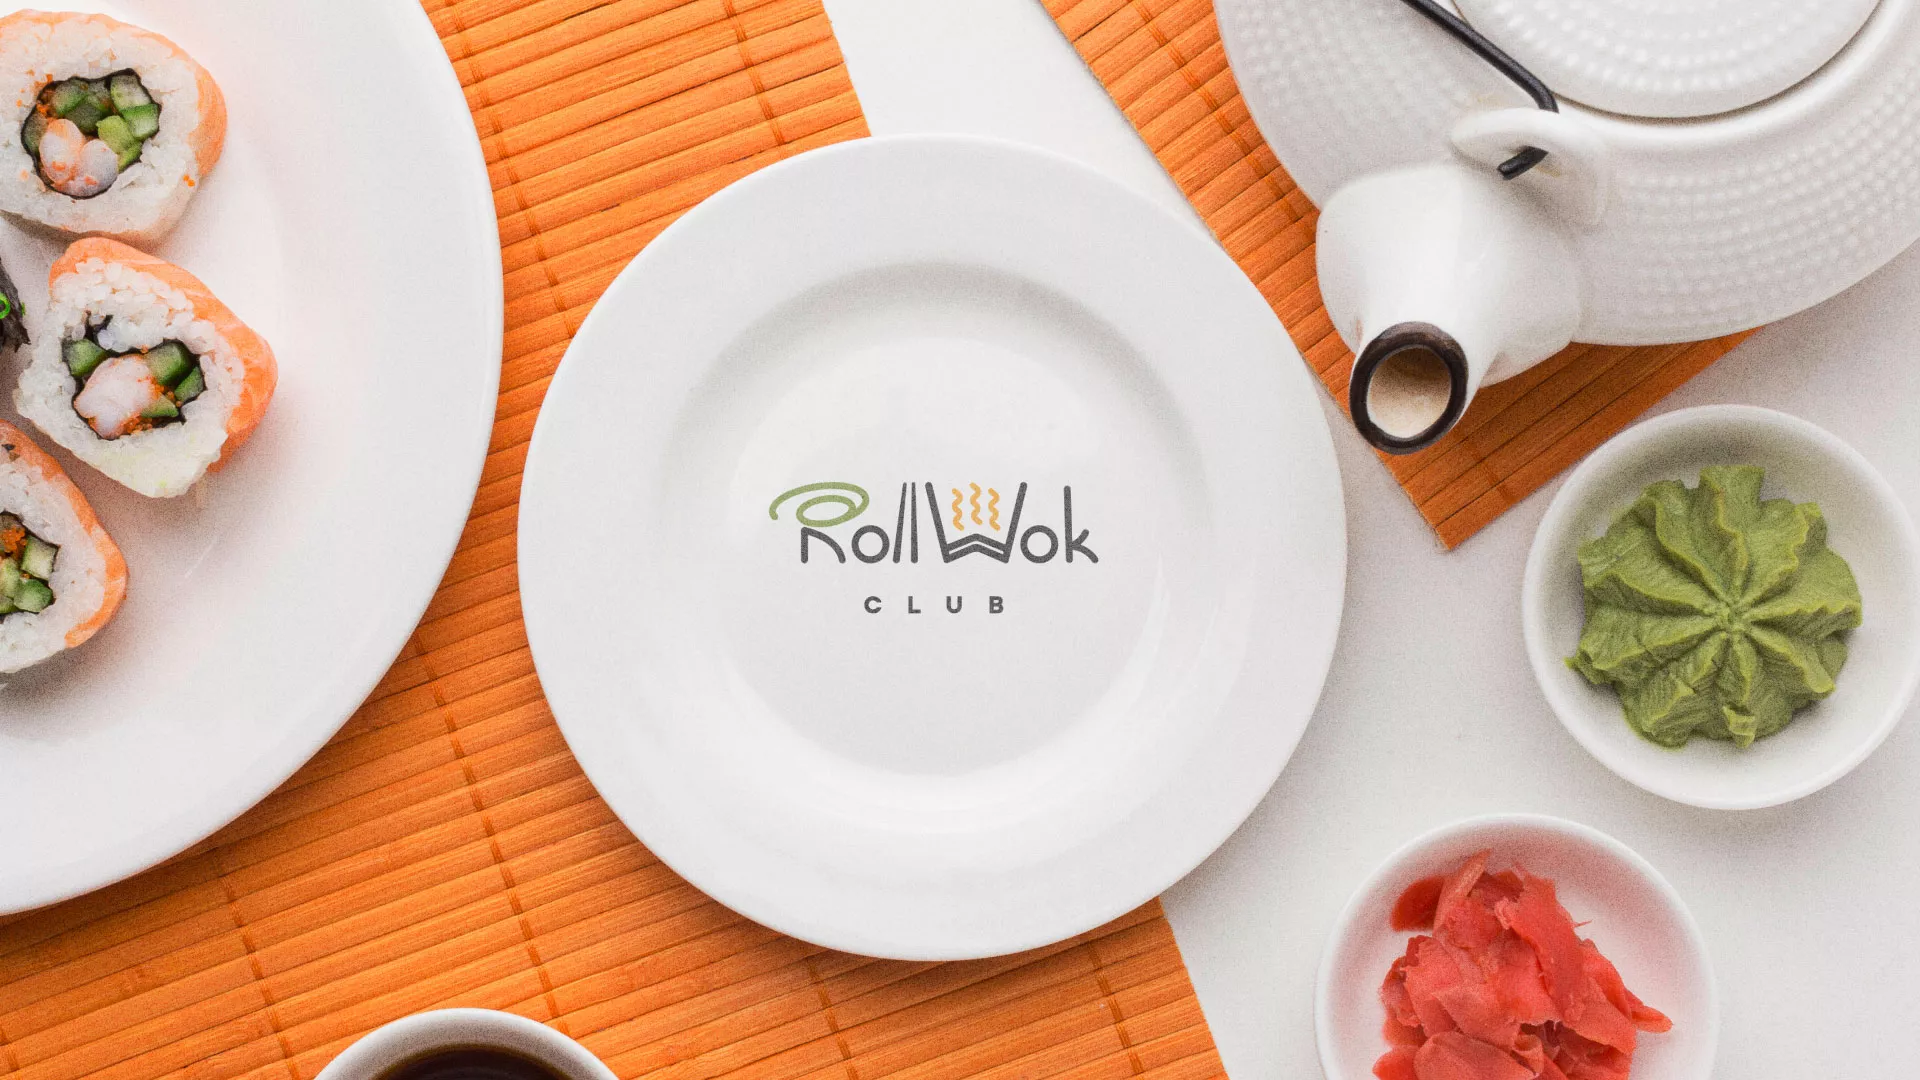 Разработка логотипа и фирменного стиля суши-бара «Roll Wok Club» в Малмыже